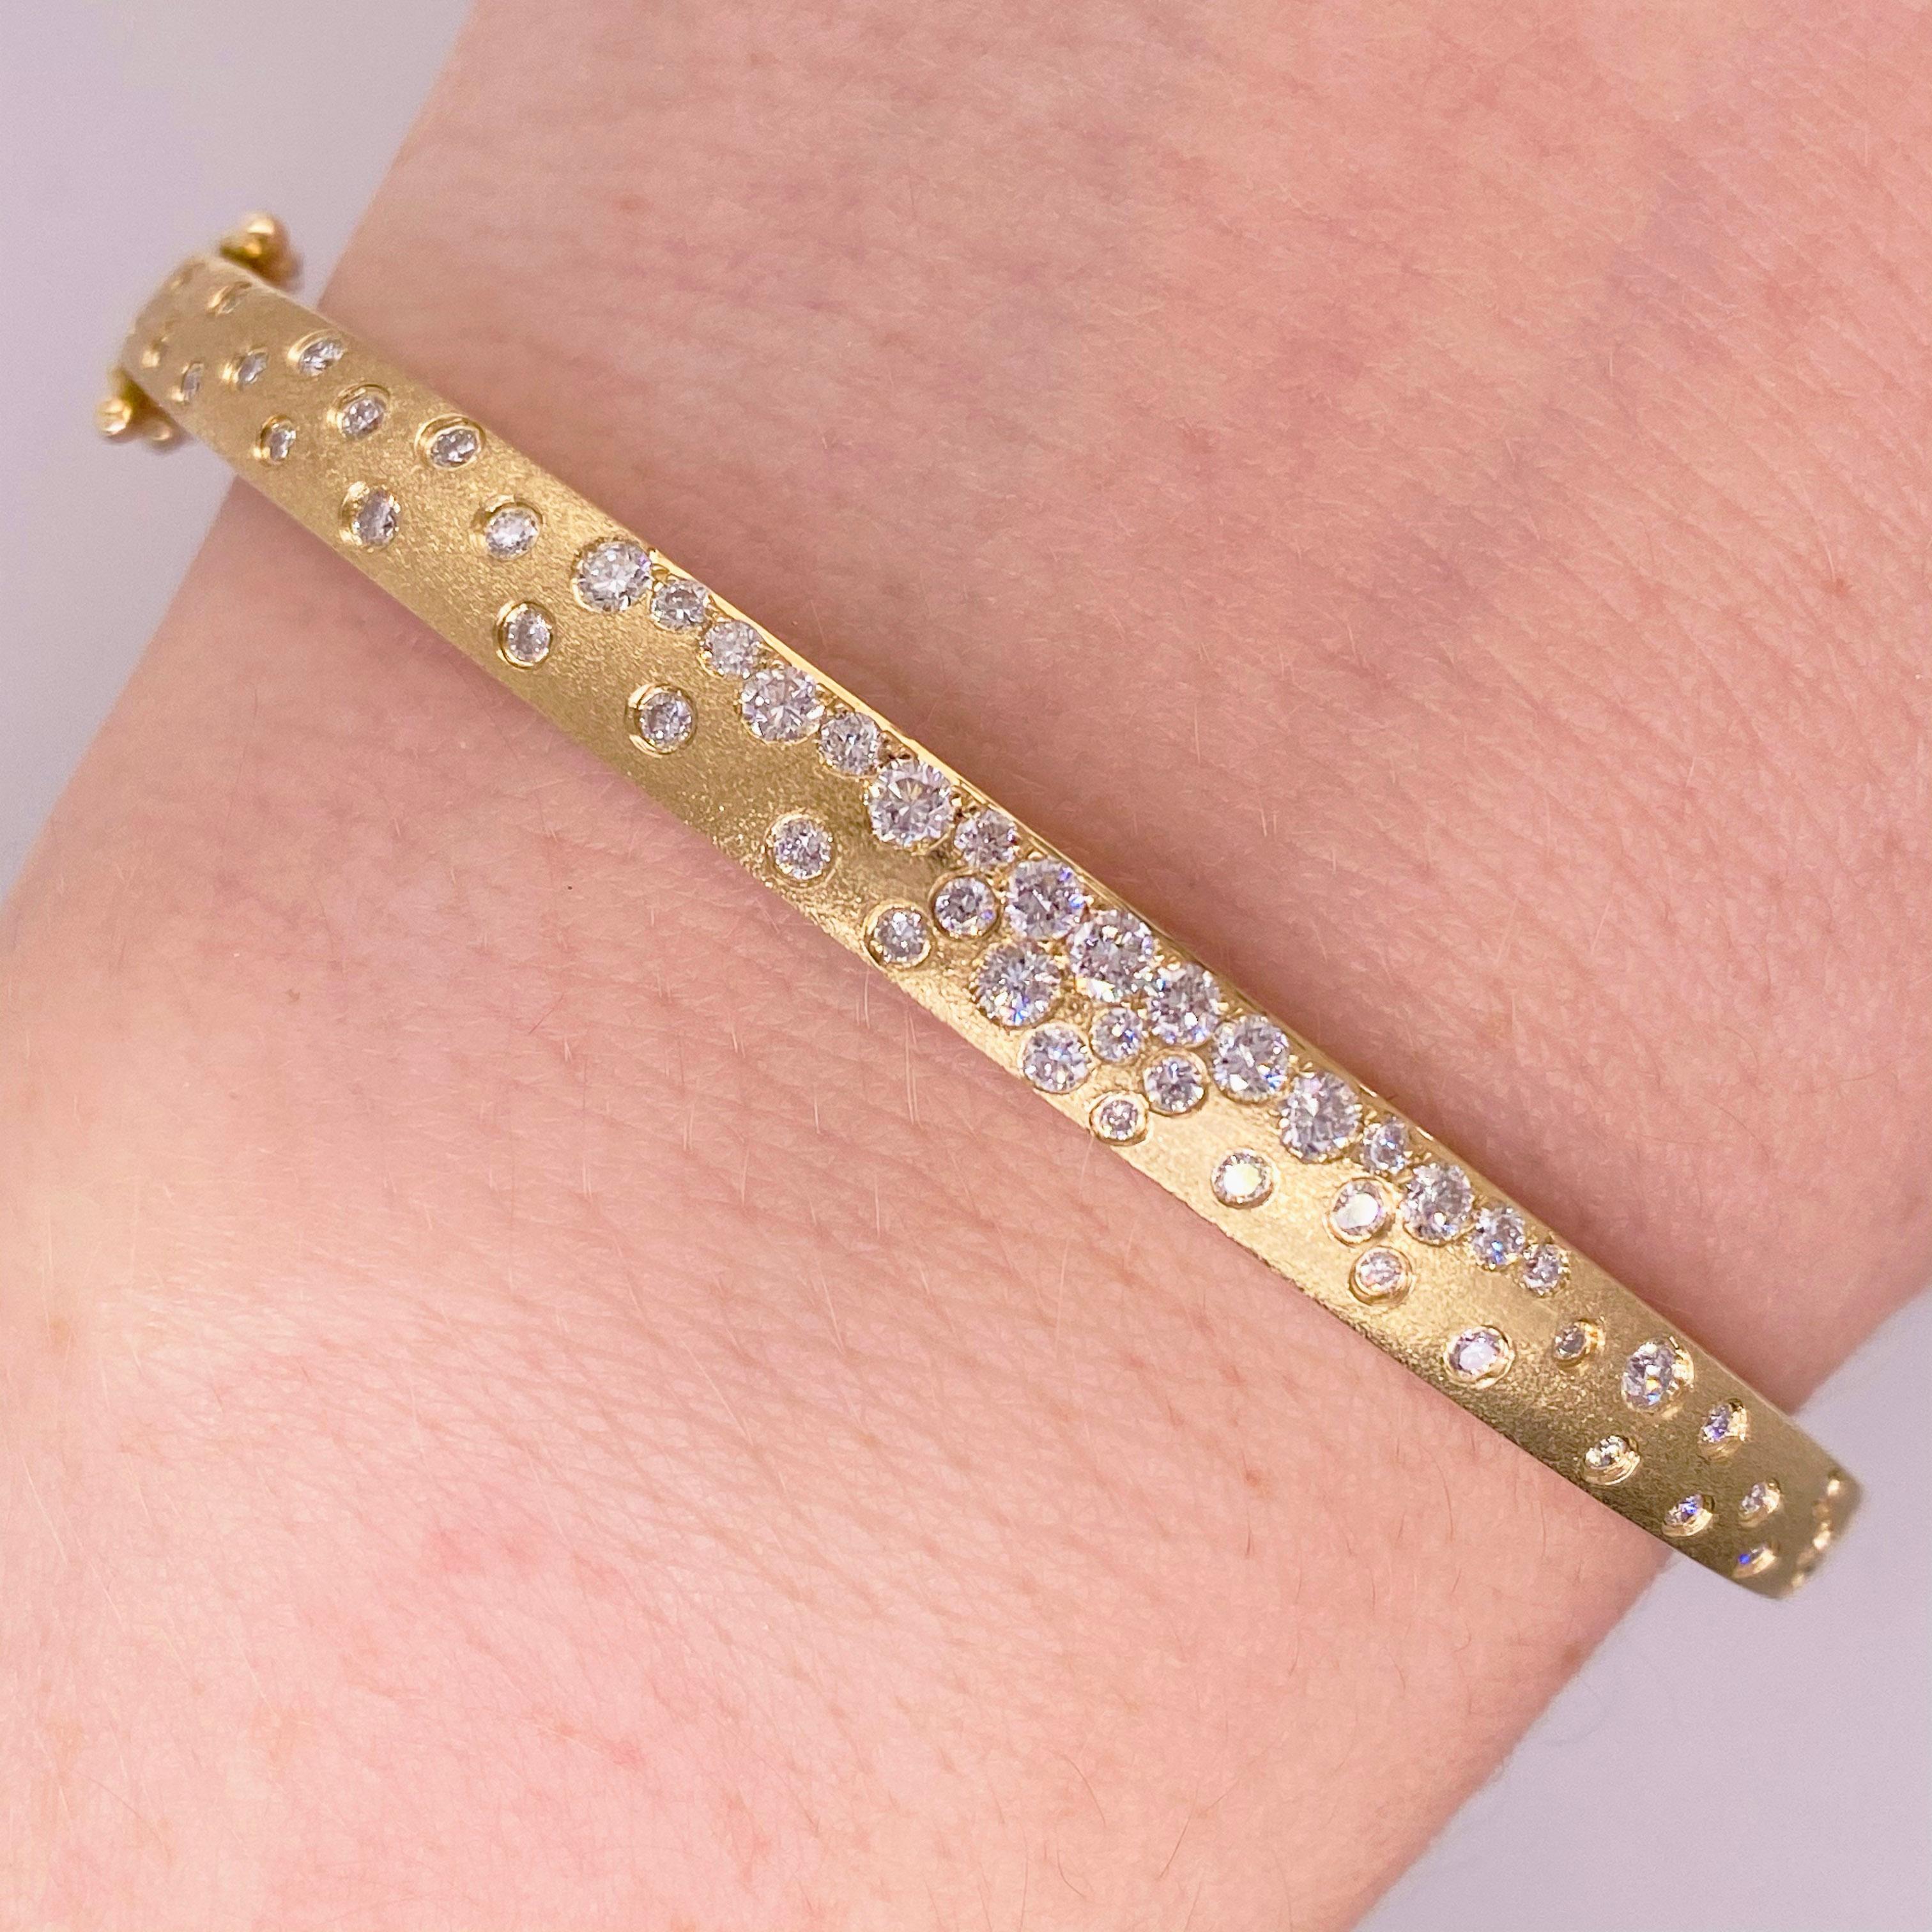 Dieses Galaxy-Diamantarmband besteht aus schönem, gebürstetem Gold, in das die Diamanten bündig eingesetzt sind.  Der Armreif ist mit 0,83 Karat strahlend weißen Diamanten in gebürstetem 14-karätigem Gelbgold besetzt! Dieses einmalige Stück ist eine